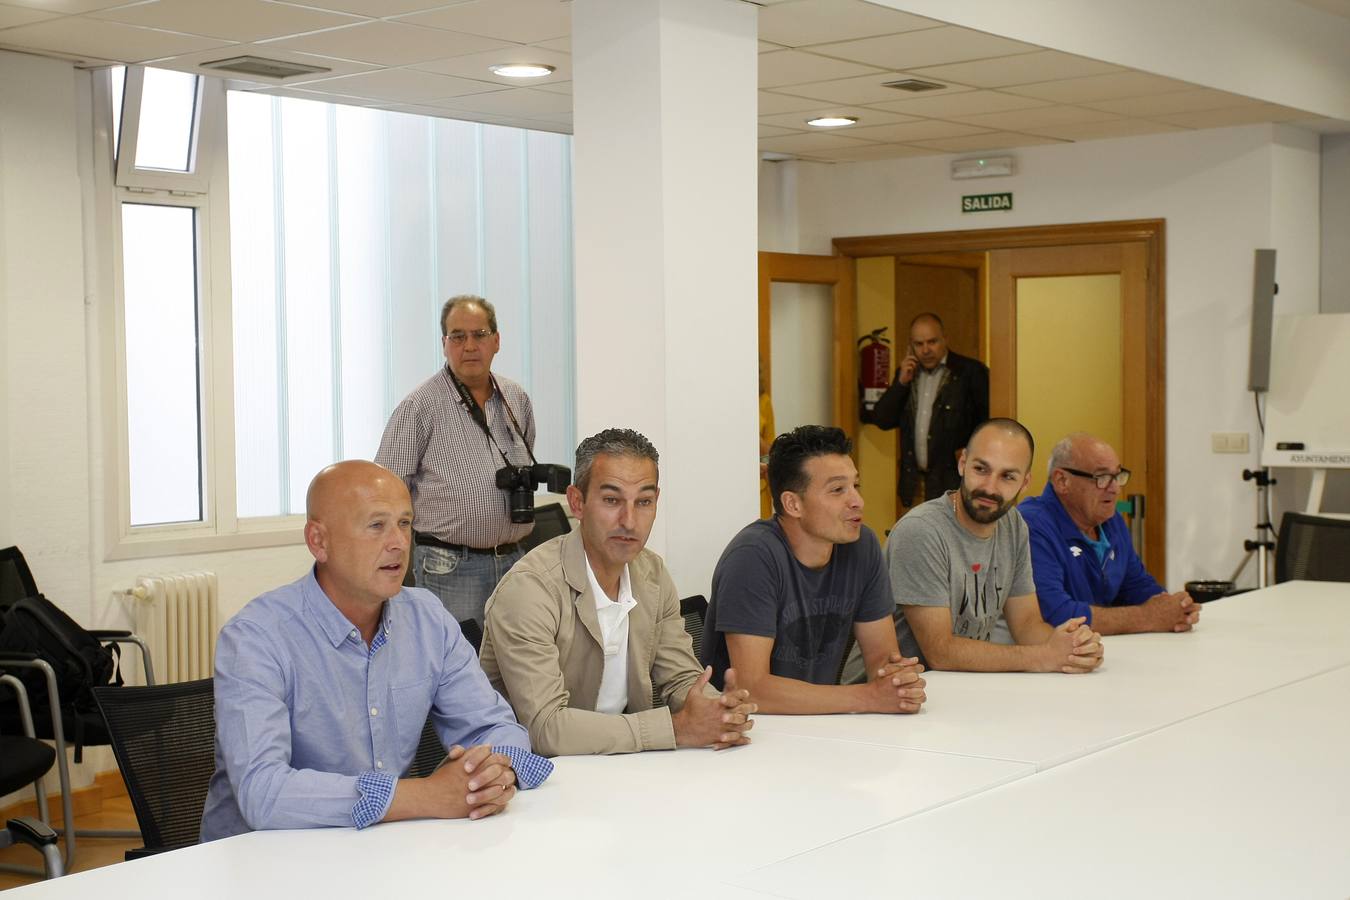 El club blanquiazul ha visitado el Ayuntamiento de Torrelavega tras la gesta del ascenso a Segunda B.